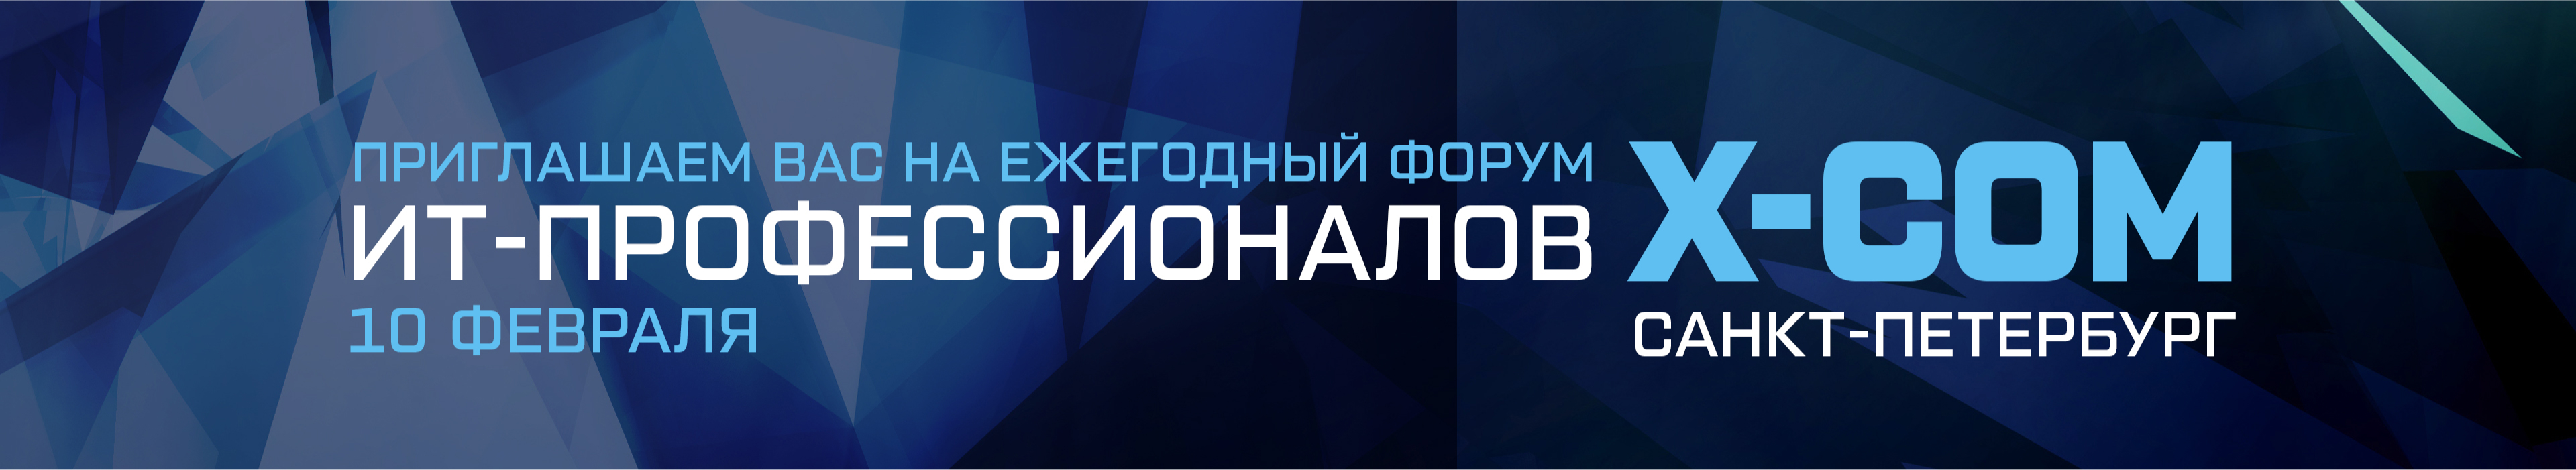 Ежегодный Форум ИТ-профессионалов XCOM, Санкт Петербург